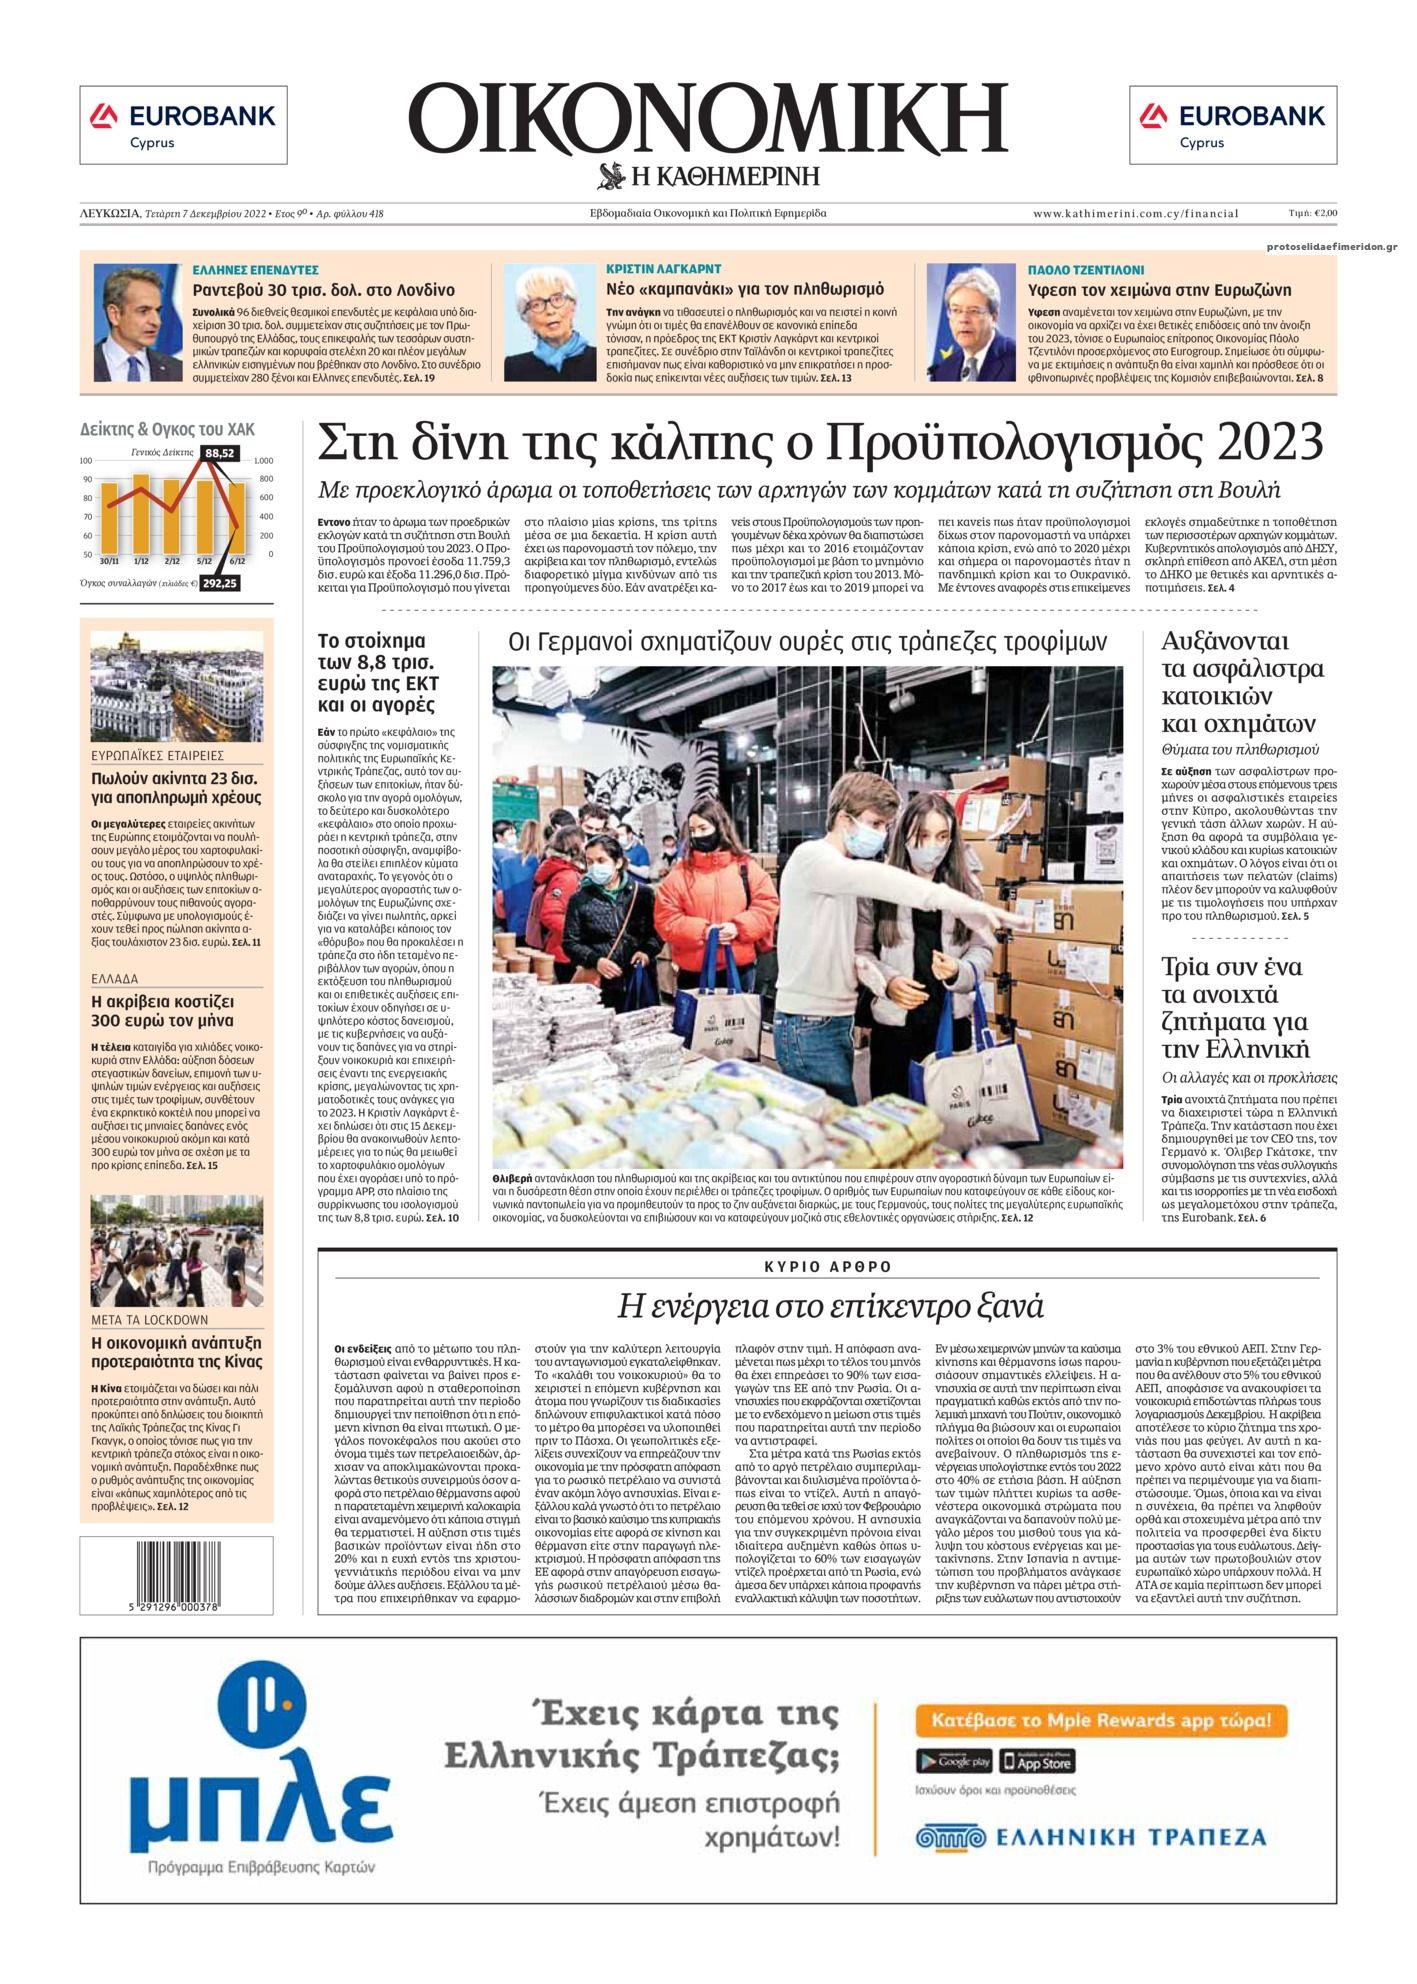 Πρωτοσέλιδο εφημερίδας Οικονομική Καθημερινή Κύπρου